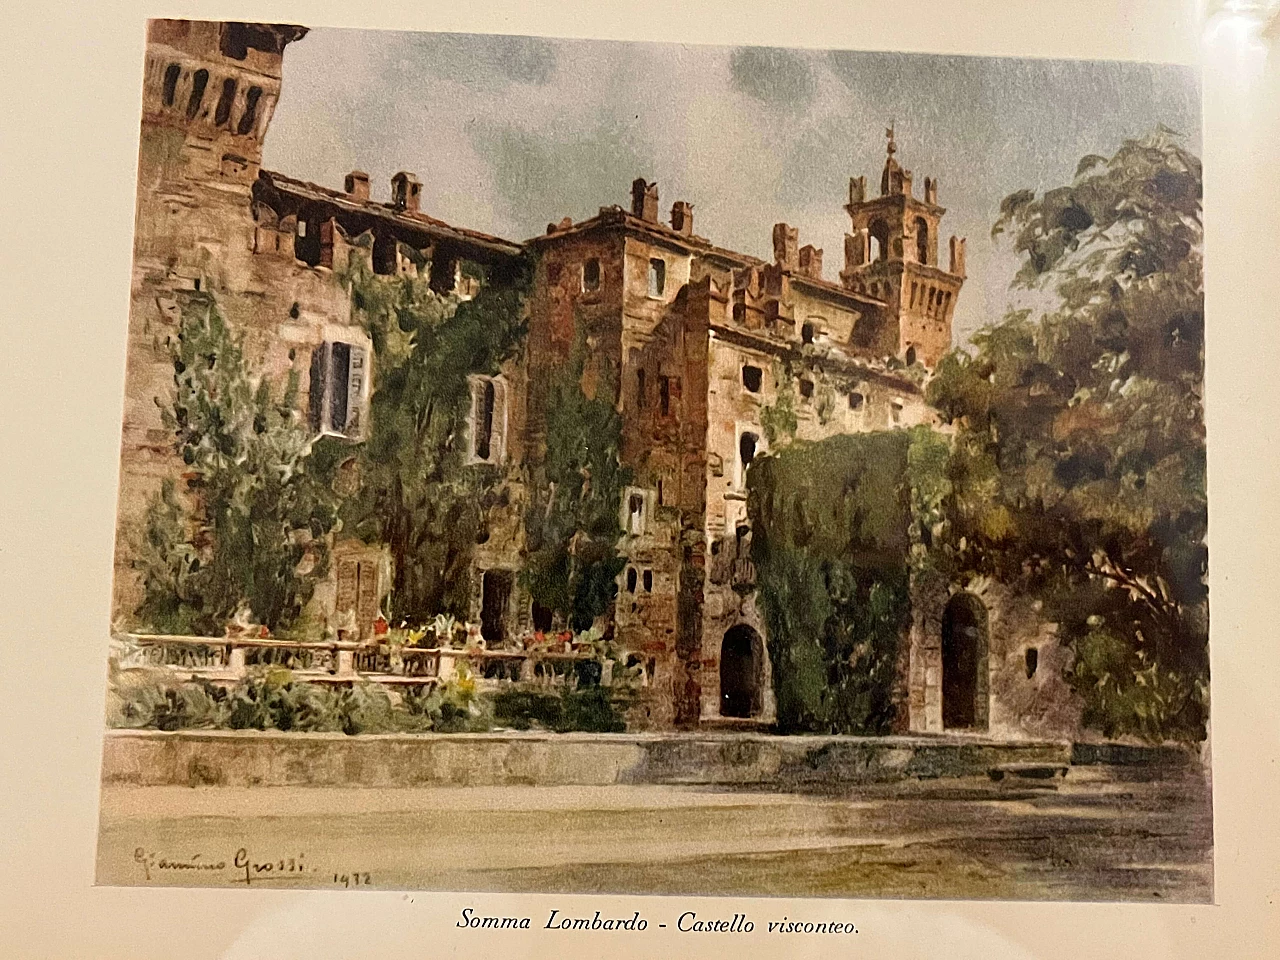 Giannino Grossi, Castello visconteo di Somma Lombardo, stampa a colori, 1932 2